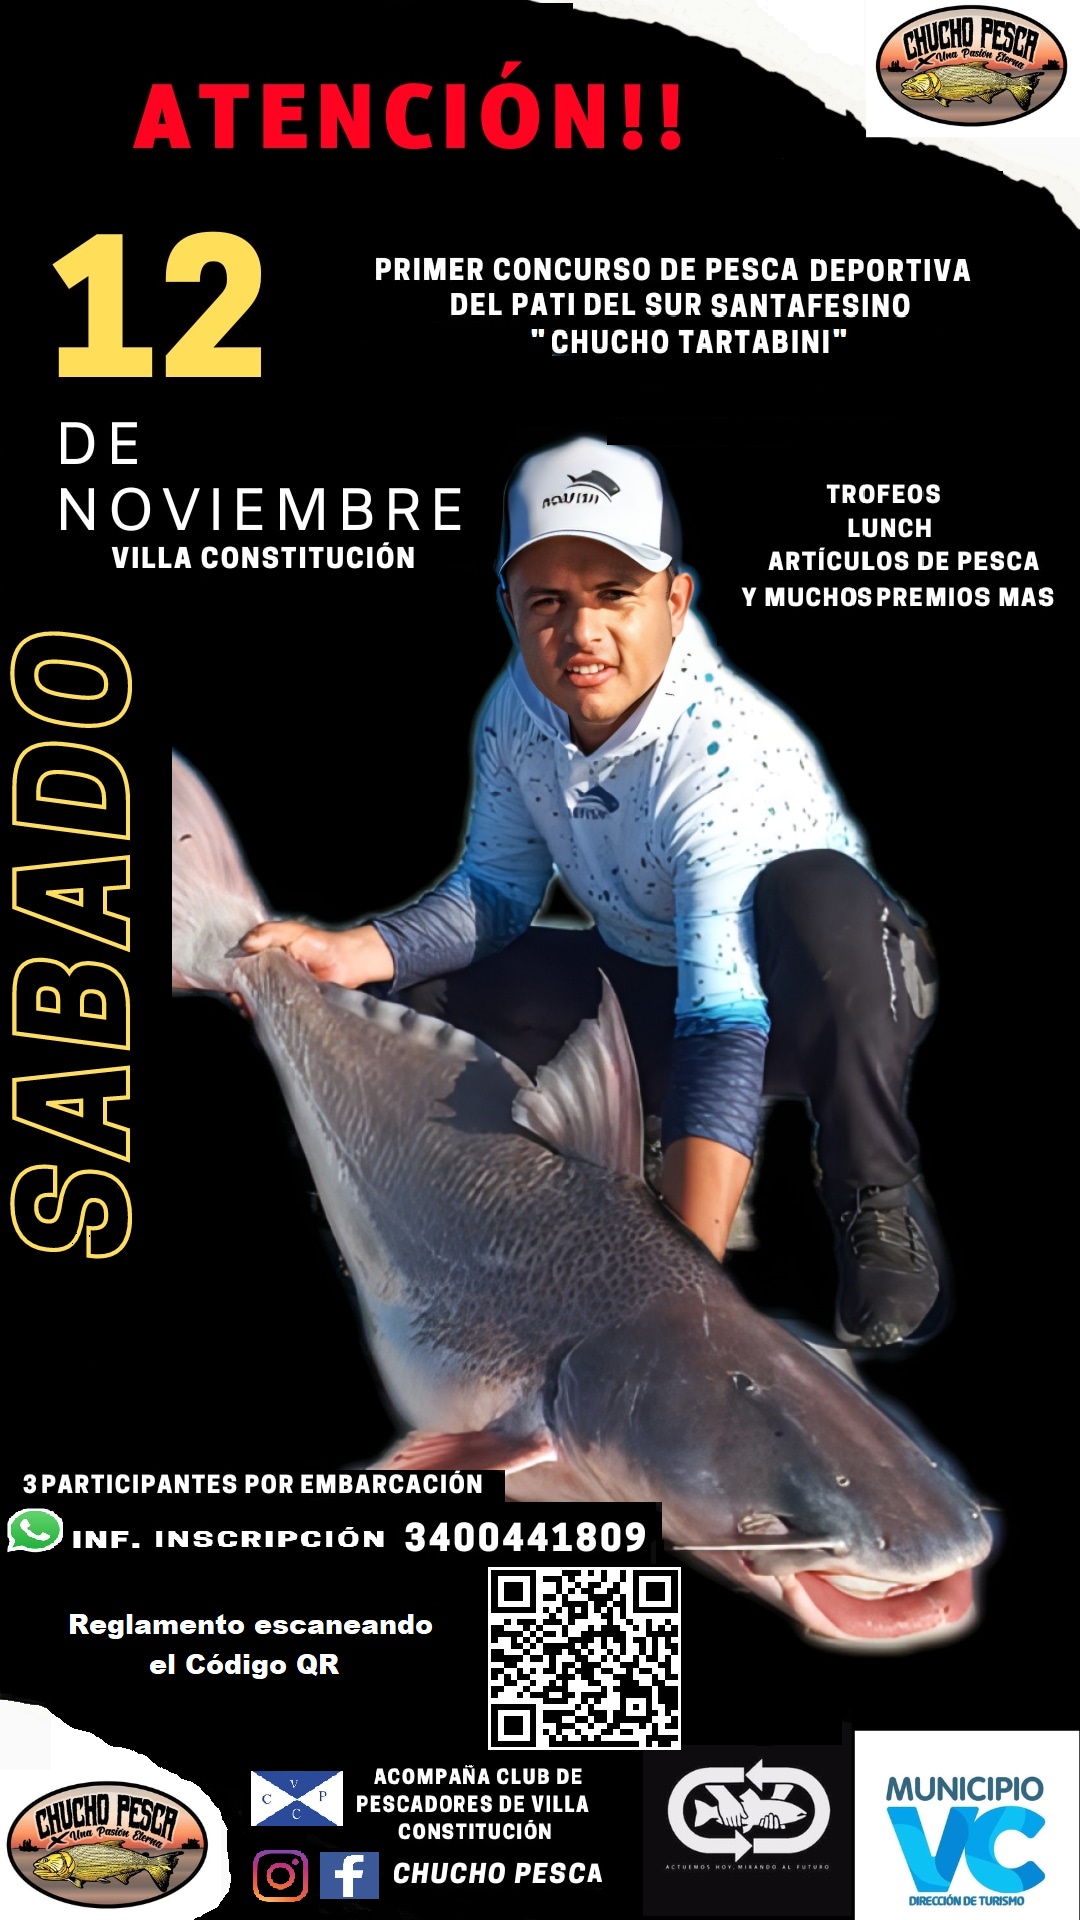 Primer Torneo de Pesca Deportiva del Patí del Sur Santafesino “Chucho Tartabini”